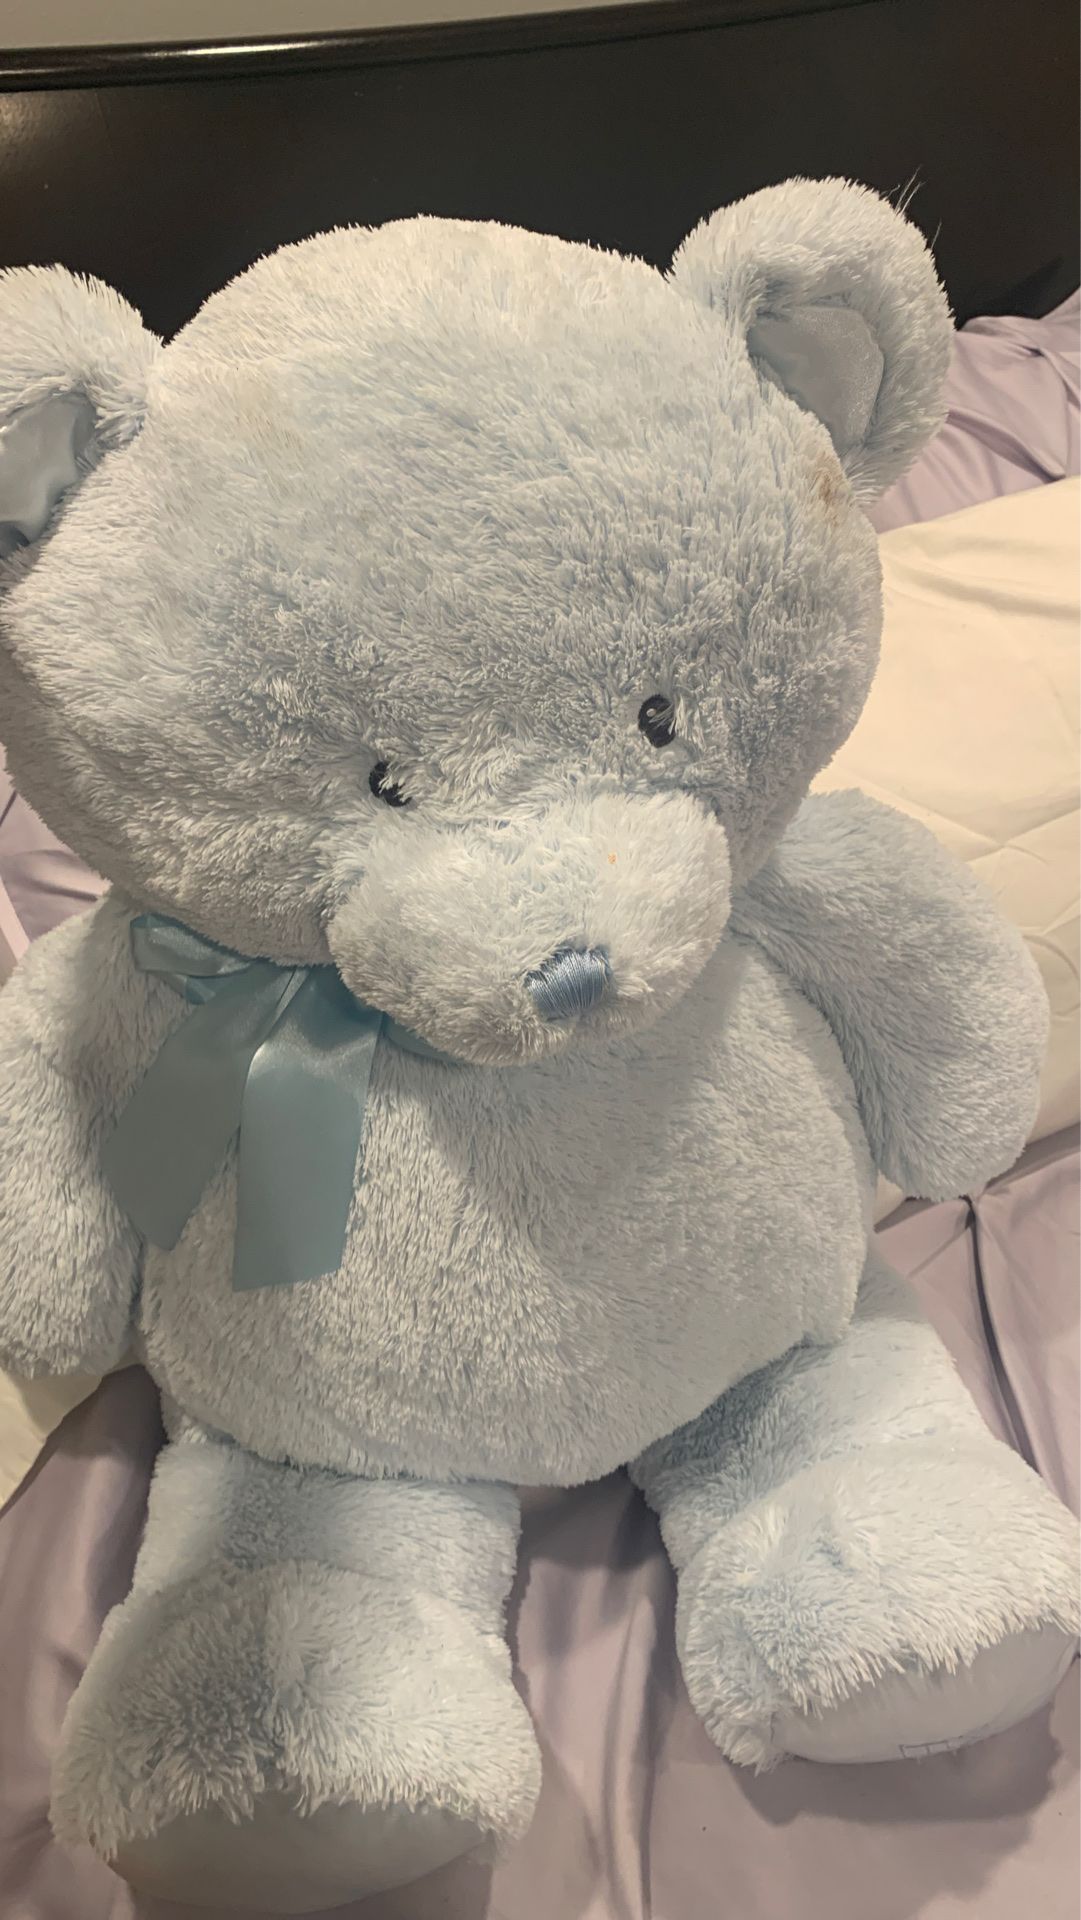 My first teddy blue bear stuffed animal